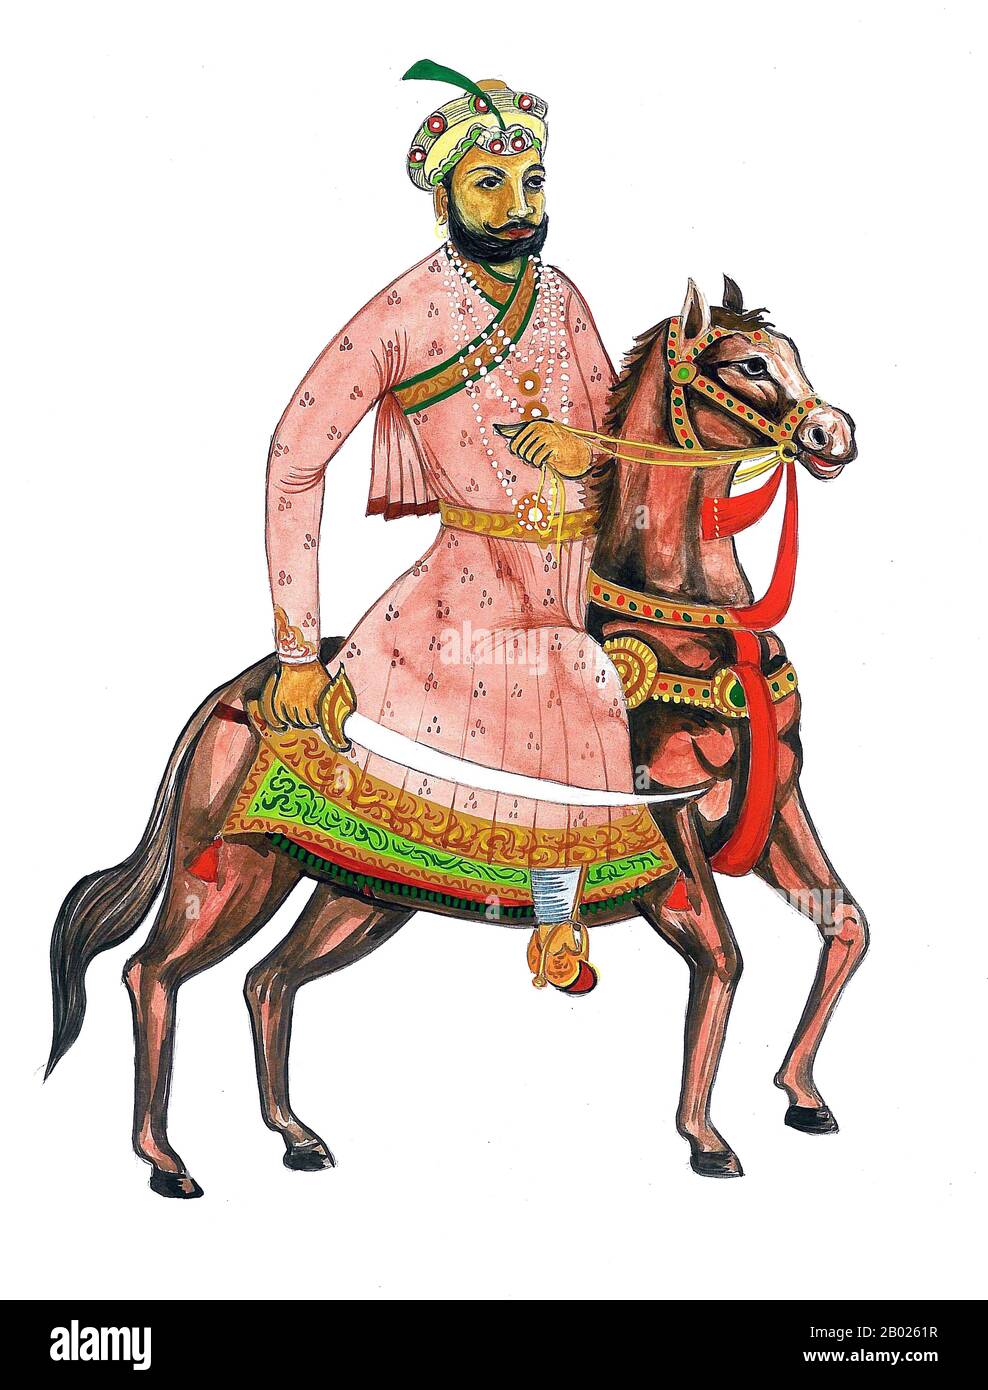 Samrat Hem Chandra Vikramaditya (auch Hemu Vikramaditya, Raja Vikramaditya oder einfach Hemu genannt) (1501 - 5. November 1556) war ein hinduistischer Kaiser Nordindiens im sechzehnten Jahrhundert CE, einer Zeit, in der Mughals und Afghanen um die Macht in der Region baten. Als Sohn eines Hindu-Priesters, der später Lebensmittelverkäufer wurde, und eines Verkäufers von Salpeter bei Rewari stieg Hemu zum Heerführer und Premierminister von Adil Shah Suri aus der Suri-Dynastie auf. Er bekämpfte afghanische Rebellen über Nordindien vom Punjab bis Bengalen und die Mughal-Streitkräfte von Akbar und Humayun in Agra und Delhi und gewann 22 Lfd Stockfoto